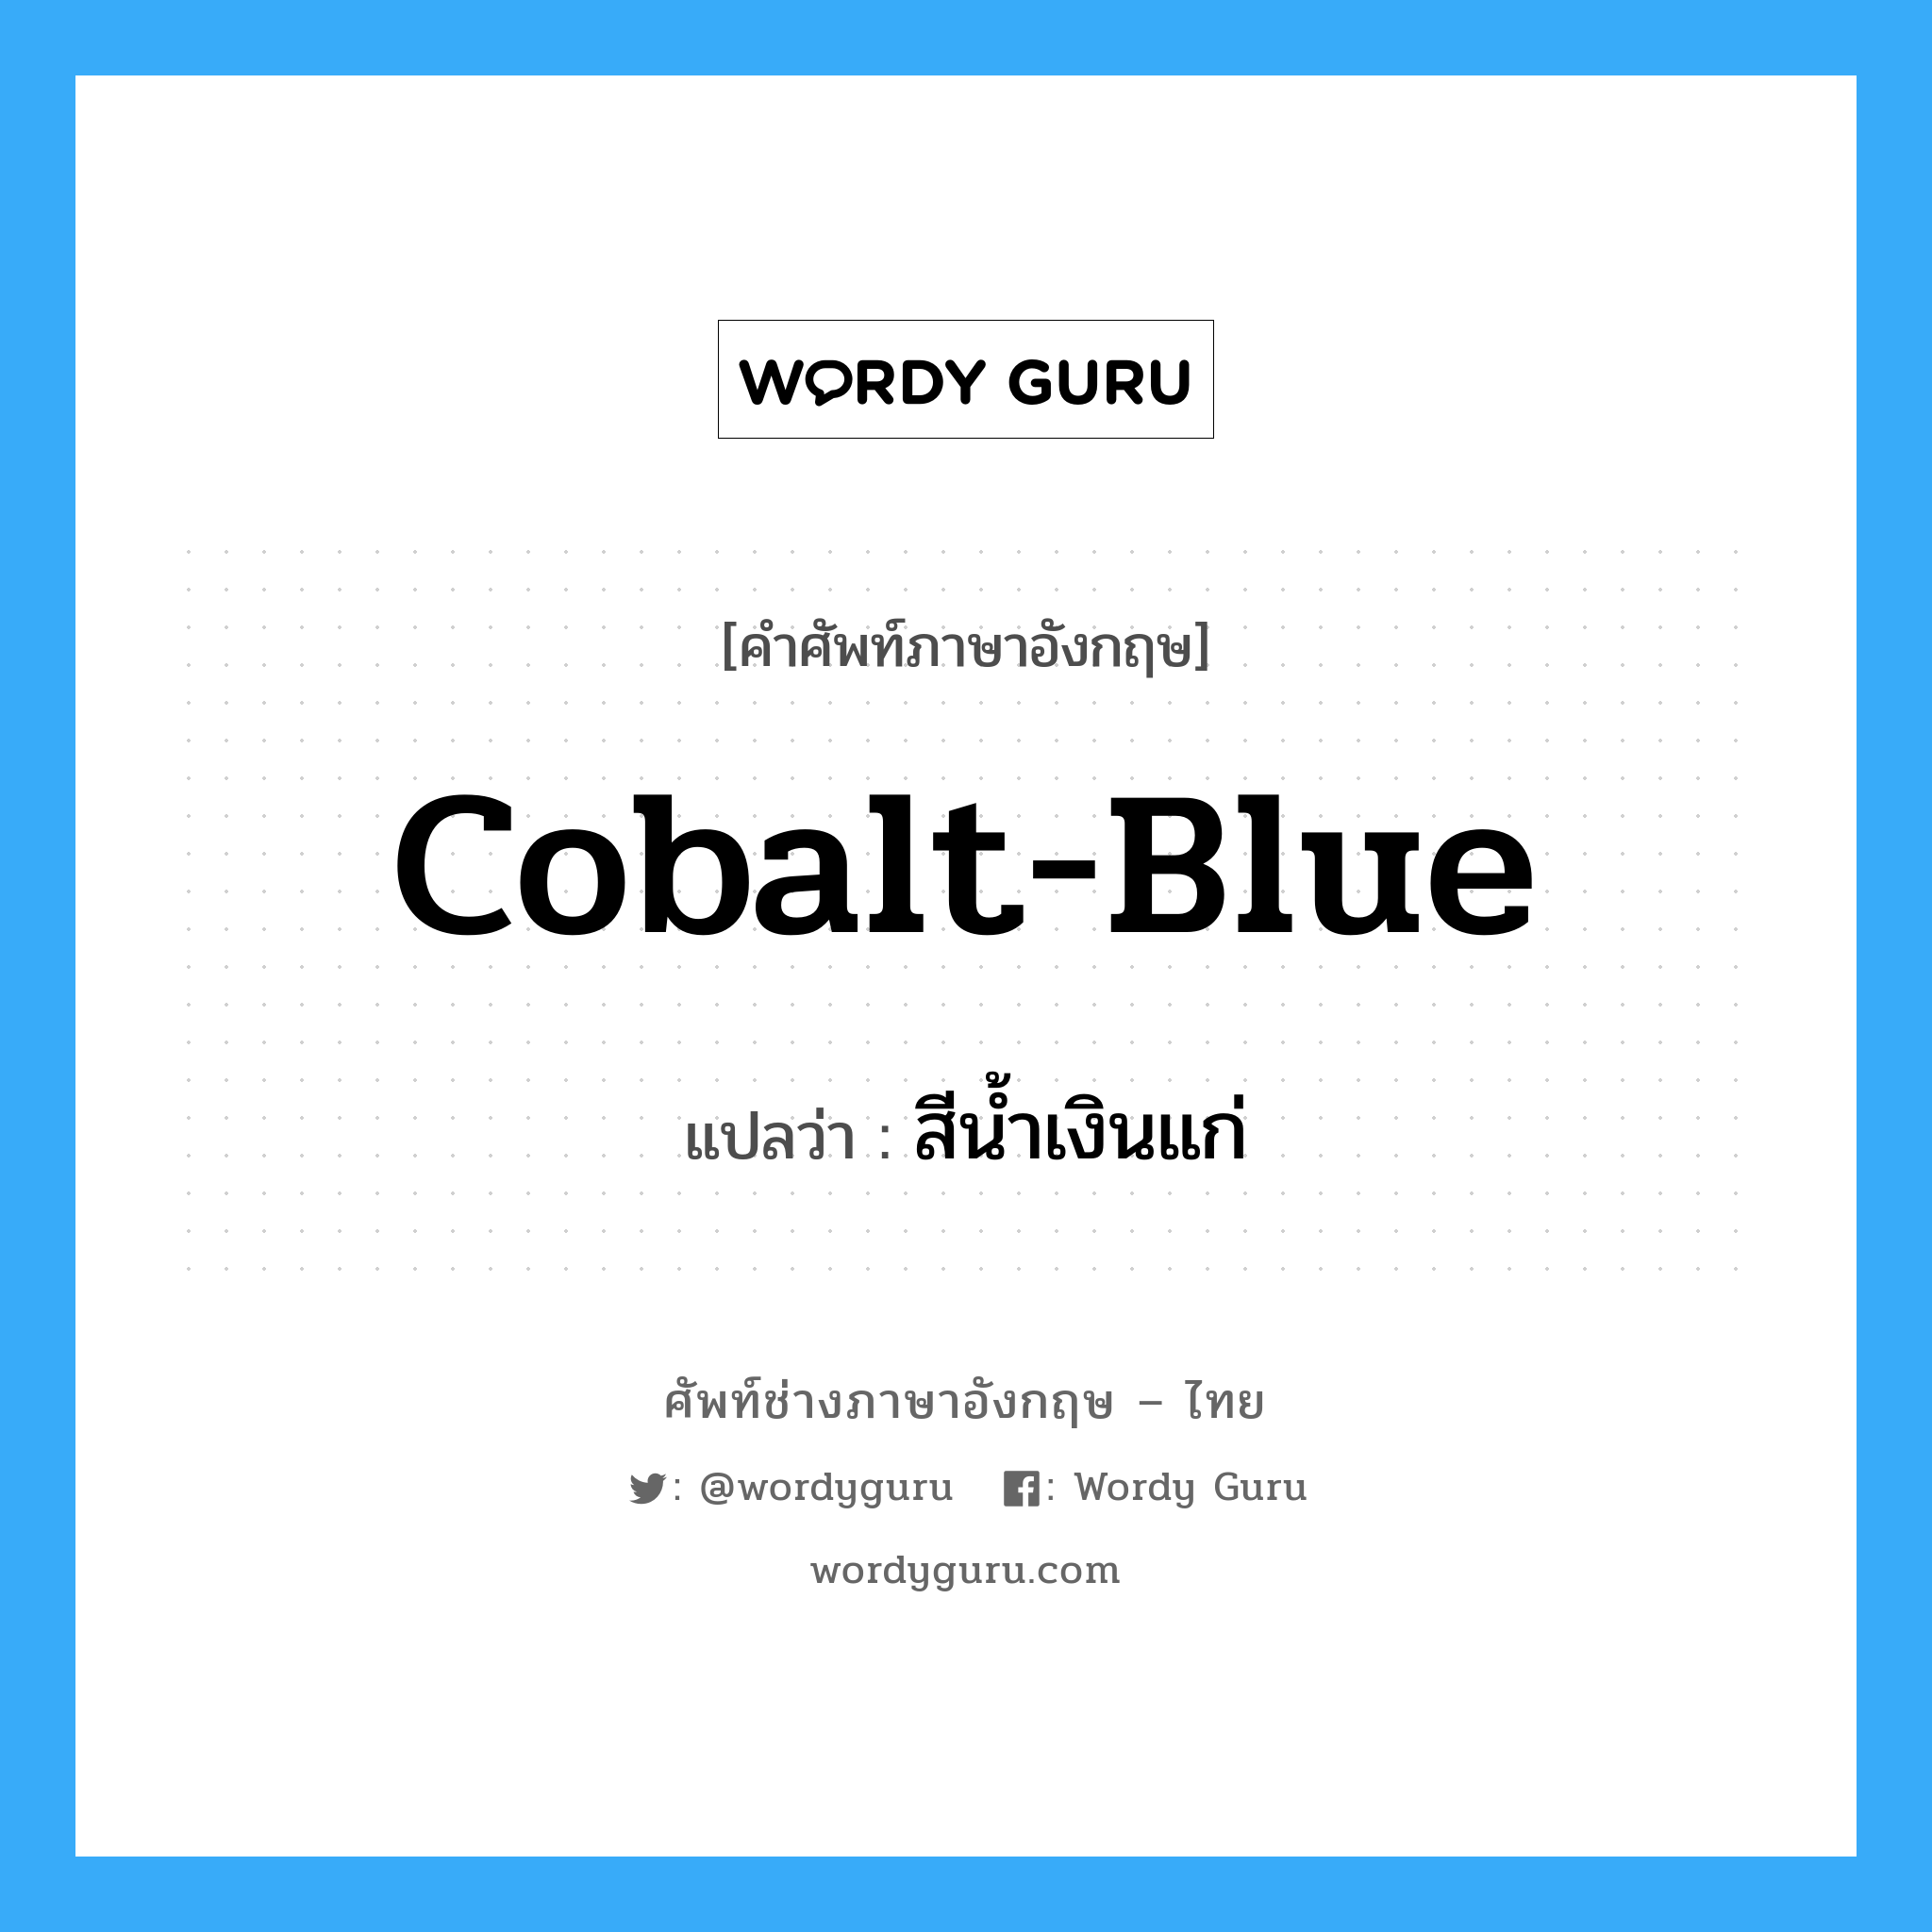 สีน้ำเงินแก่ ภาษาอังกฤษ?, คำศัพท์ช่างภาษาอังกฤษ - ไทย สีน้ำเงินแก่ คำศัพท์ภาษาอังกฤษ สีน้ำเงินแก่ แปลว่า cobalt-blue